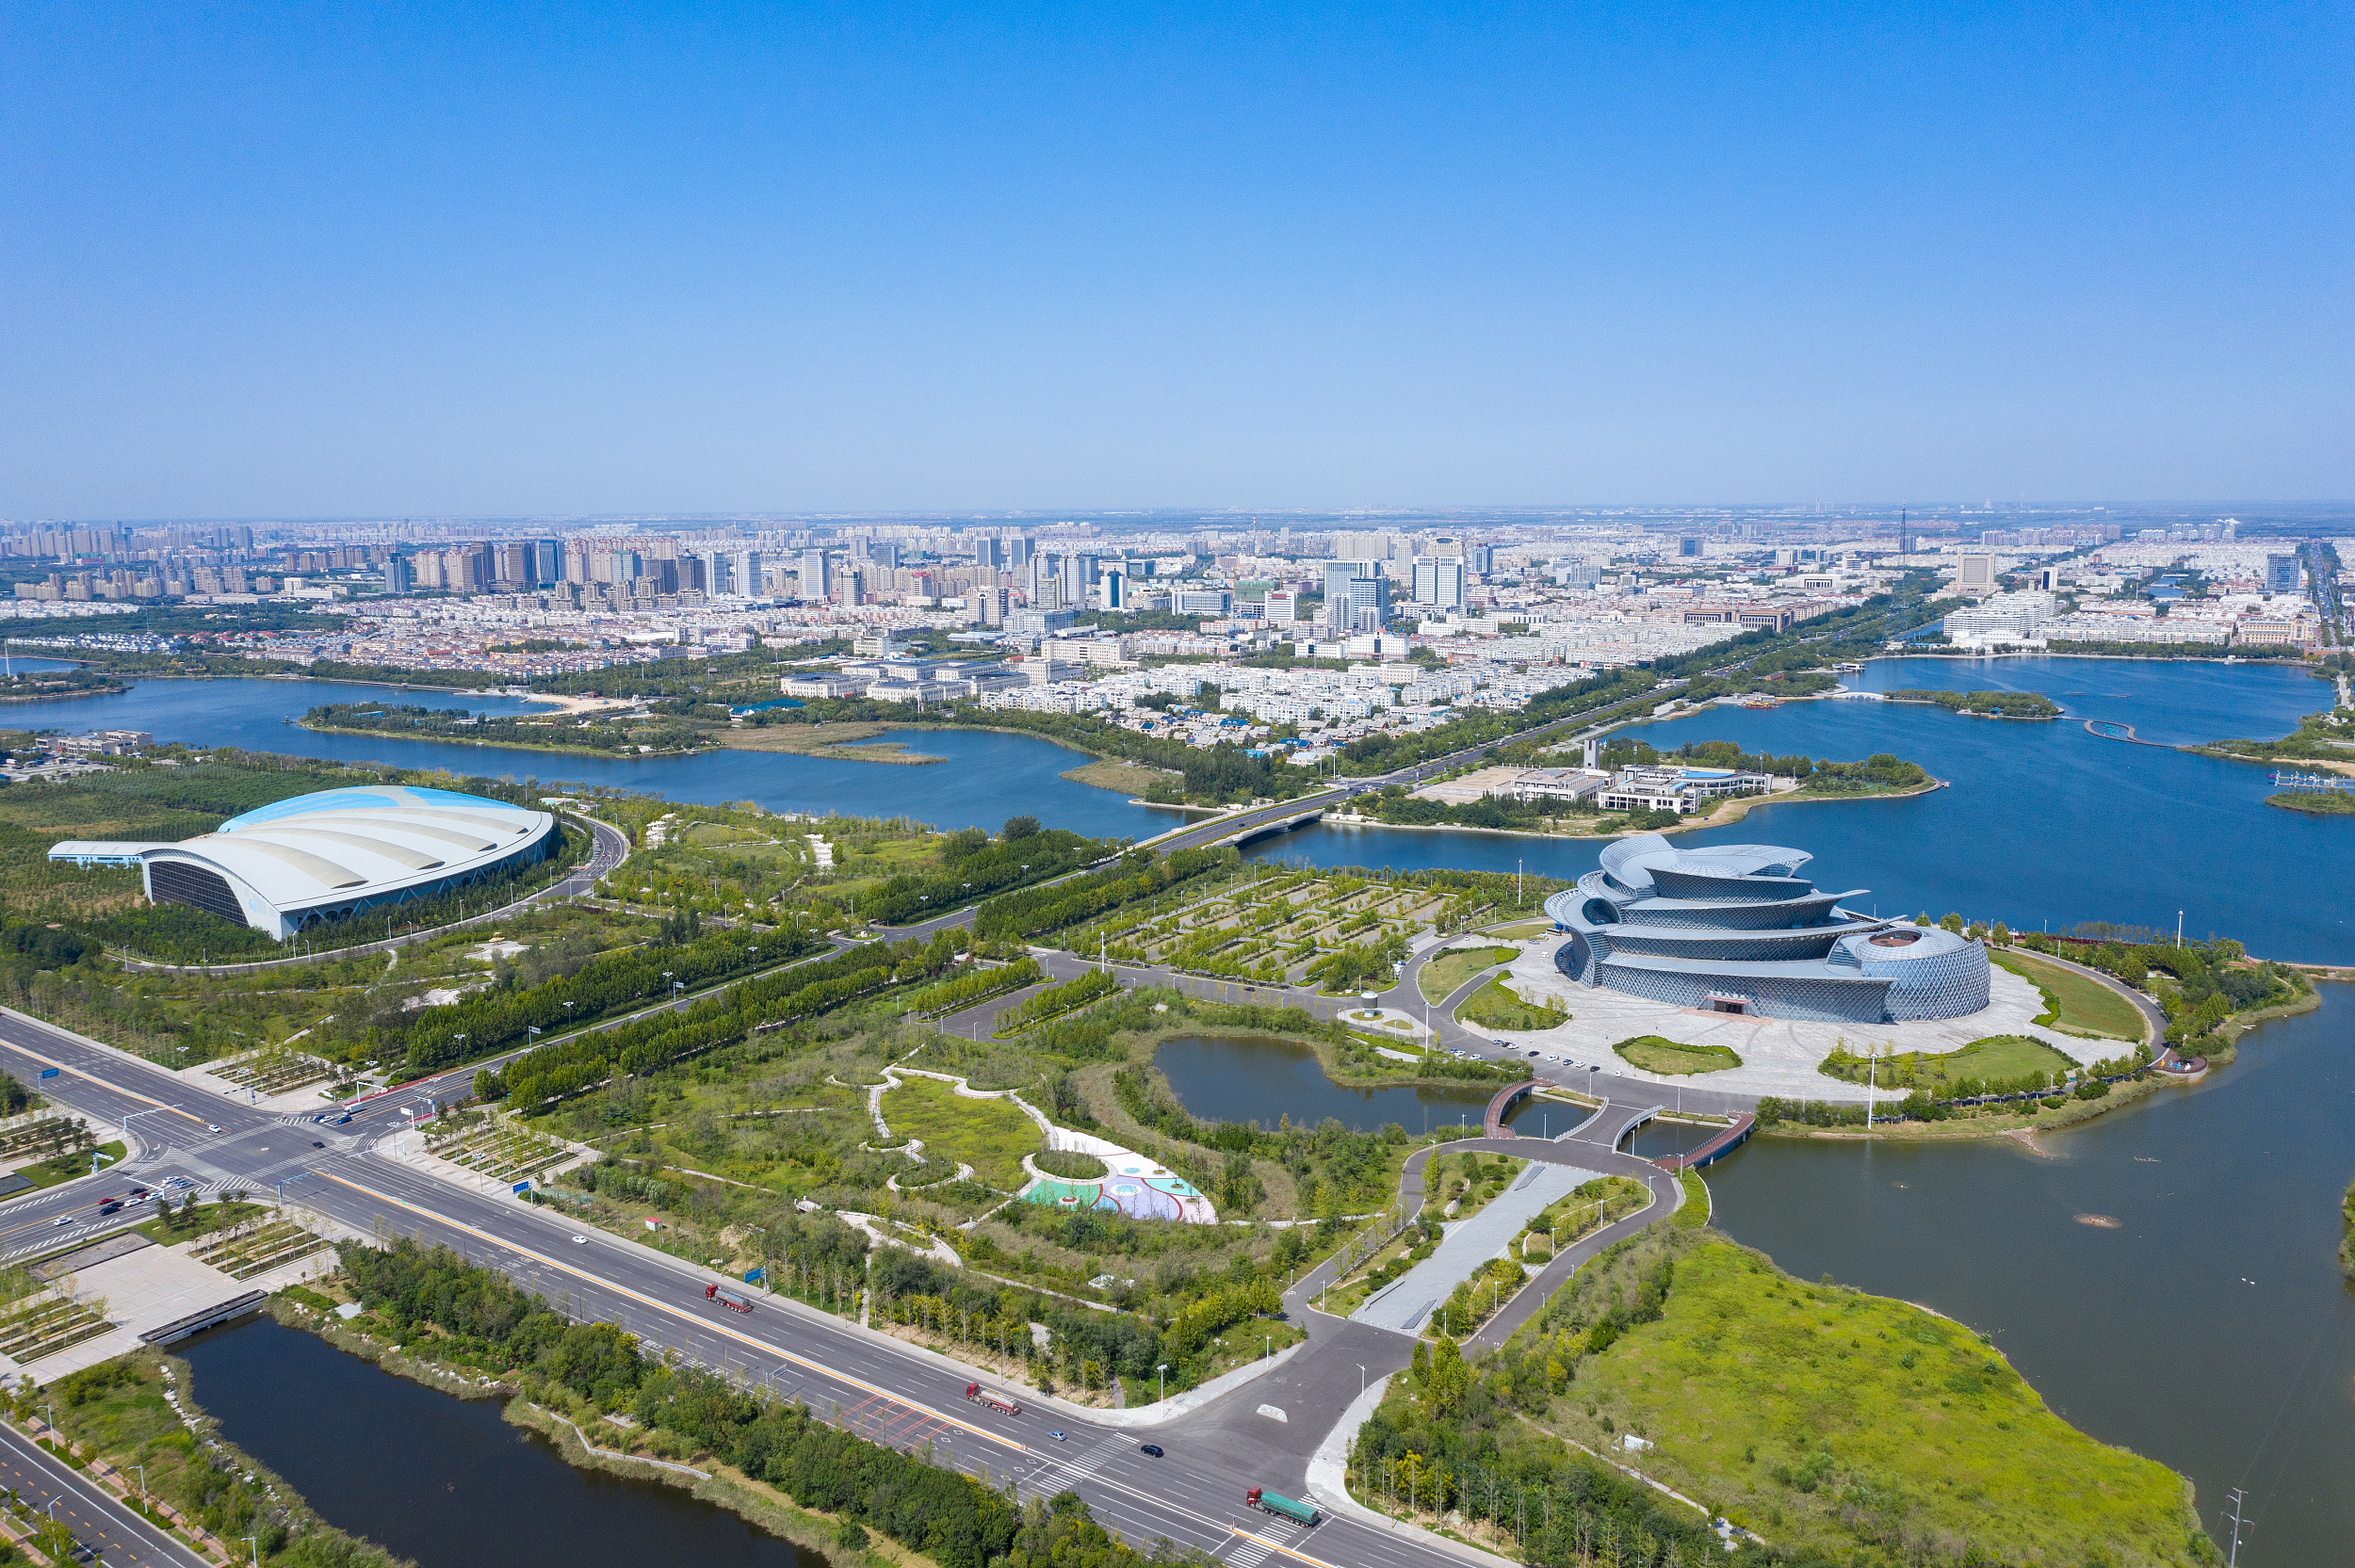 促进人与自然和谐共生 建设富有活力的现代化湿地城市